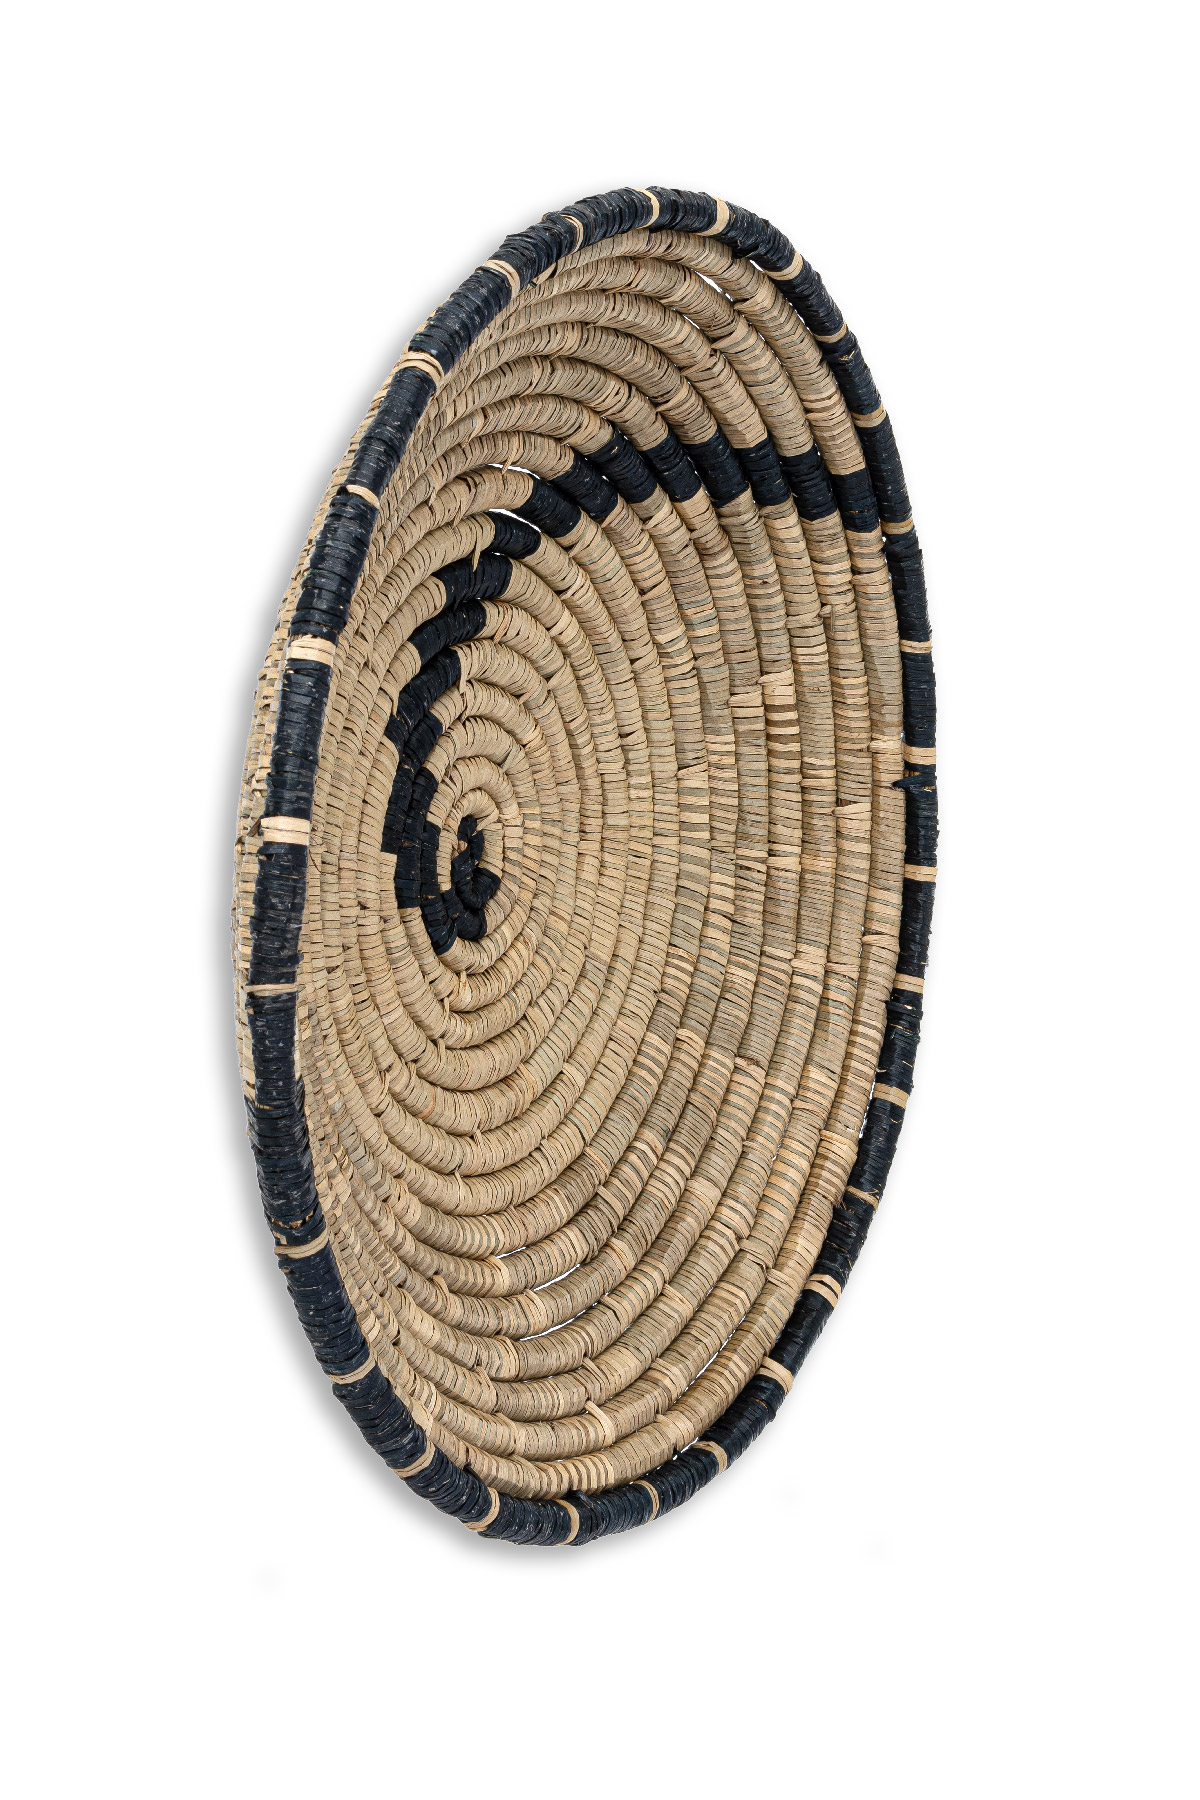 Koza Home - Meander Bambu Afrikan El Yapımı Fibonacci Duvar Tabağı 60cm 8912 (1)